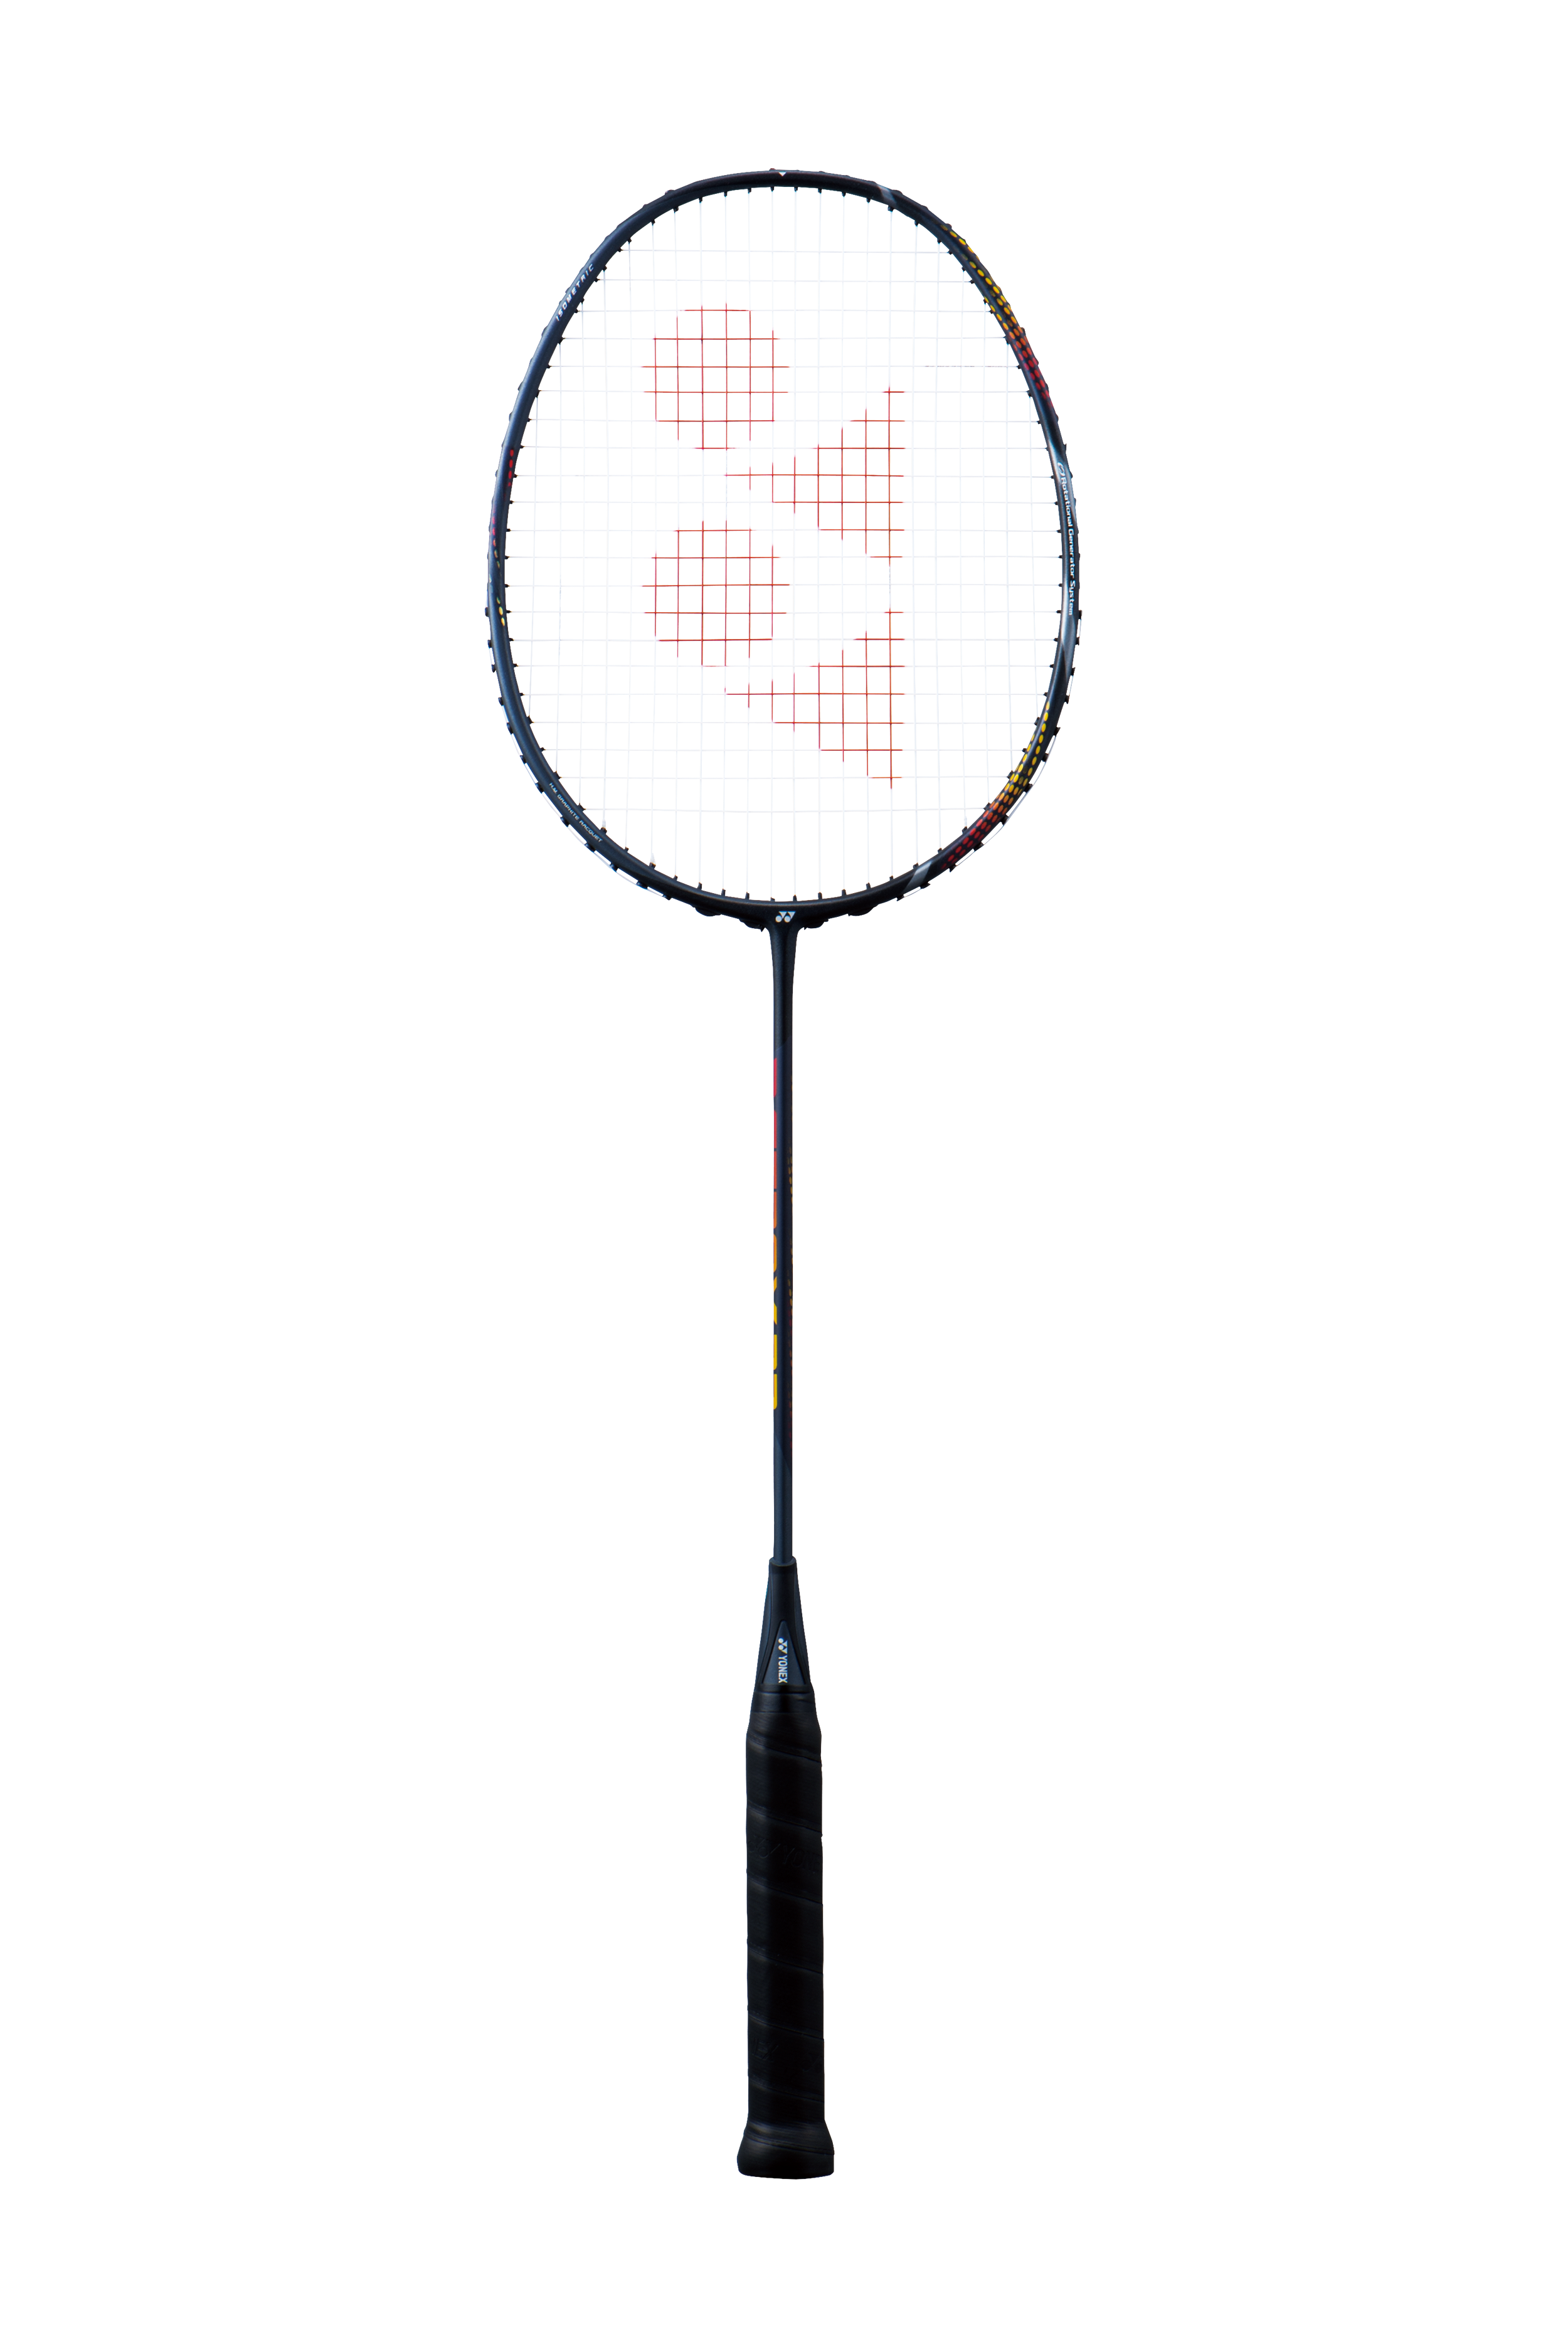 Yonex Astrox 22 Badminton Racquet AX-22 - 2F5 (Ave 68 g) - Pre-strung